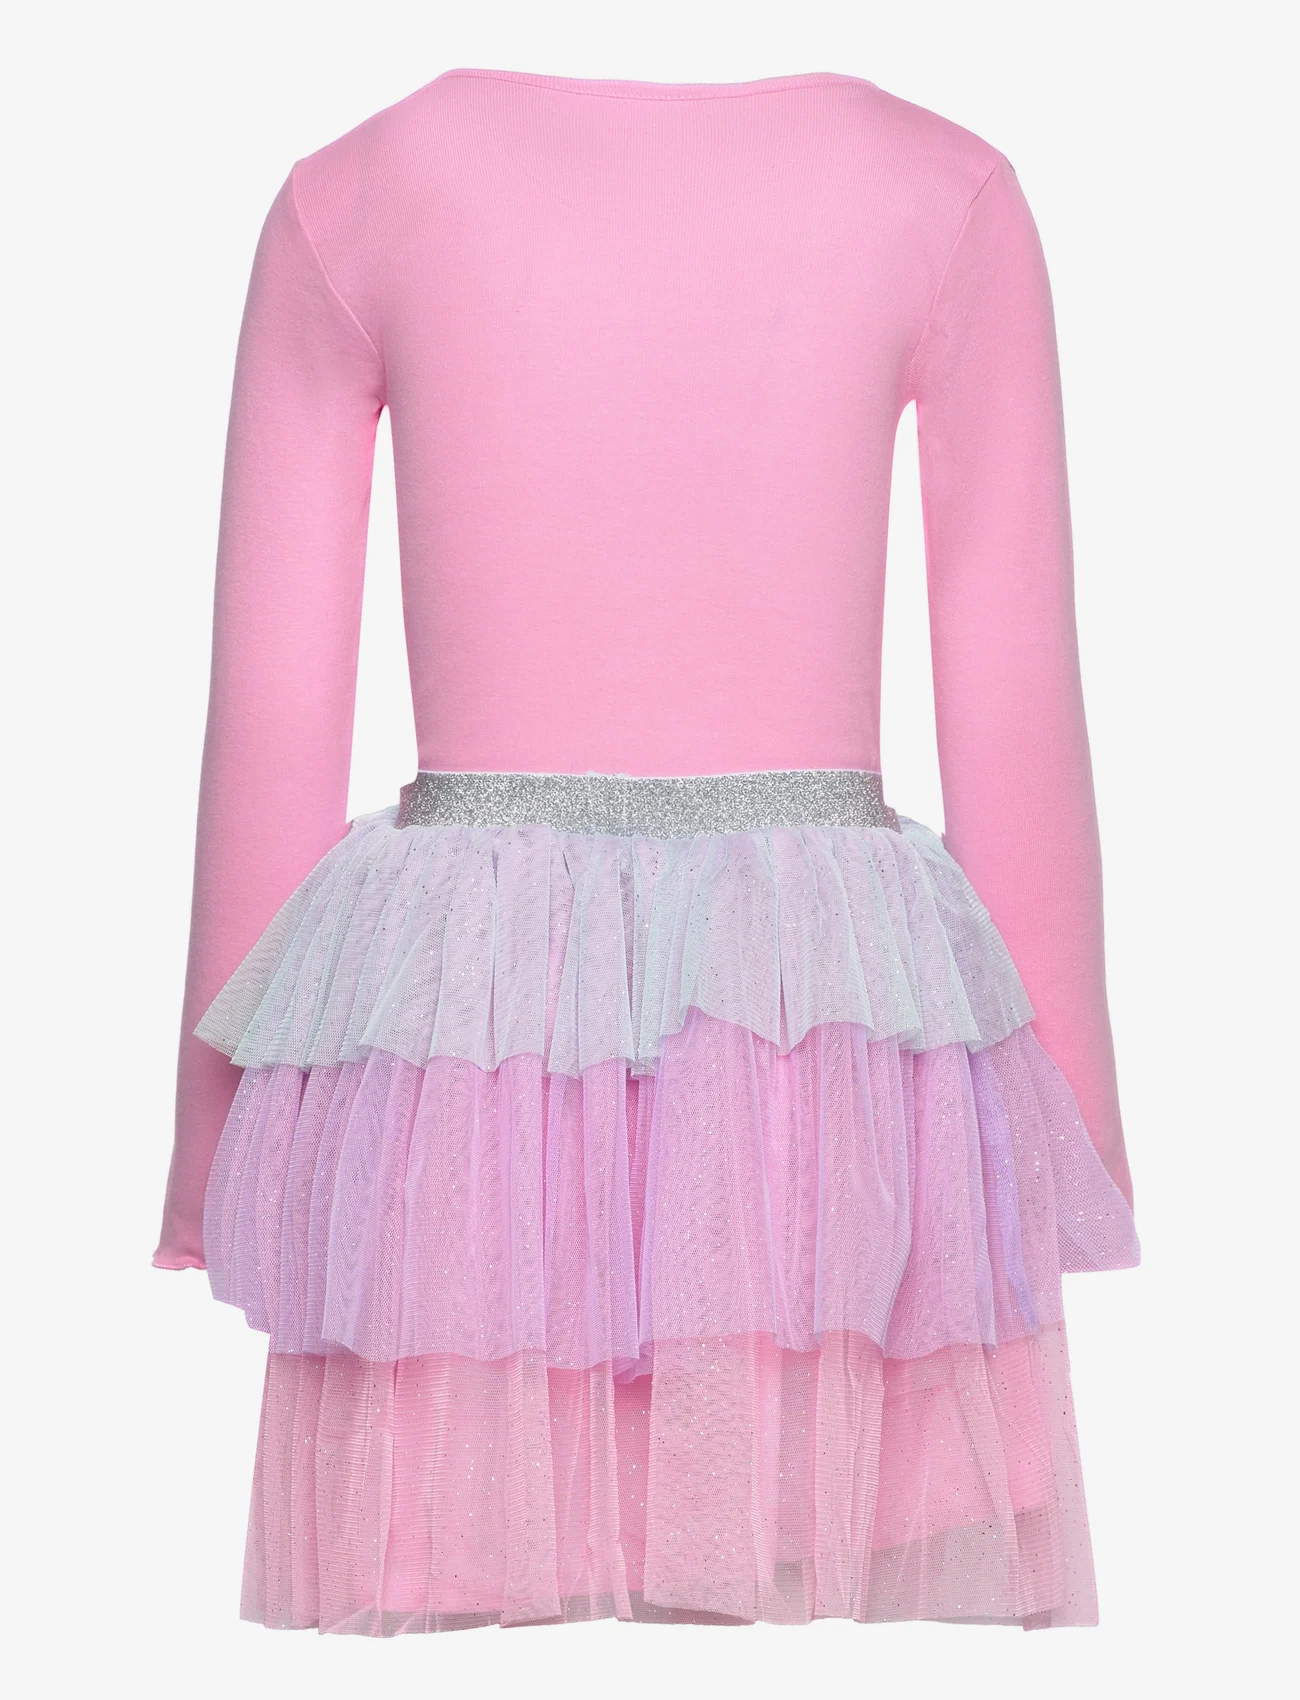 L.O.L - LONG-SLEEVED DRESS - casual jurken met lange mouwen - pink - 1